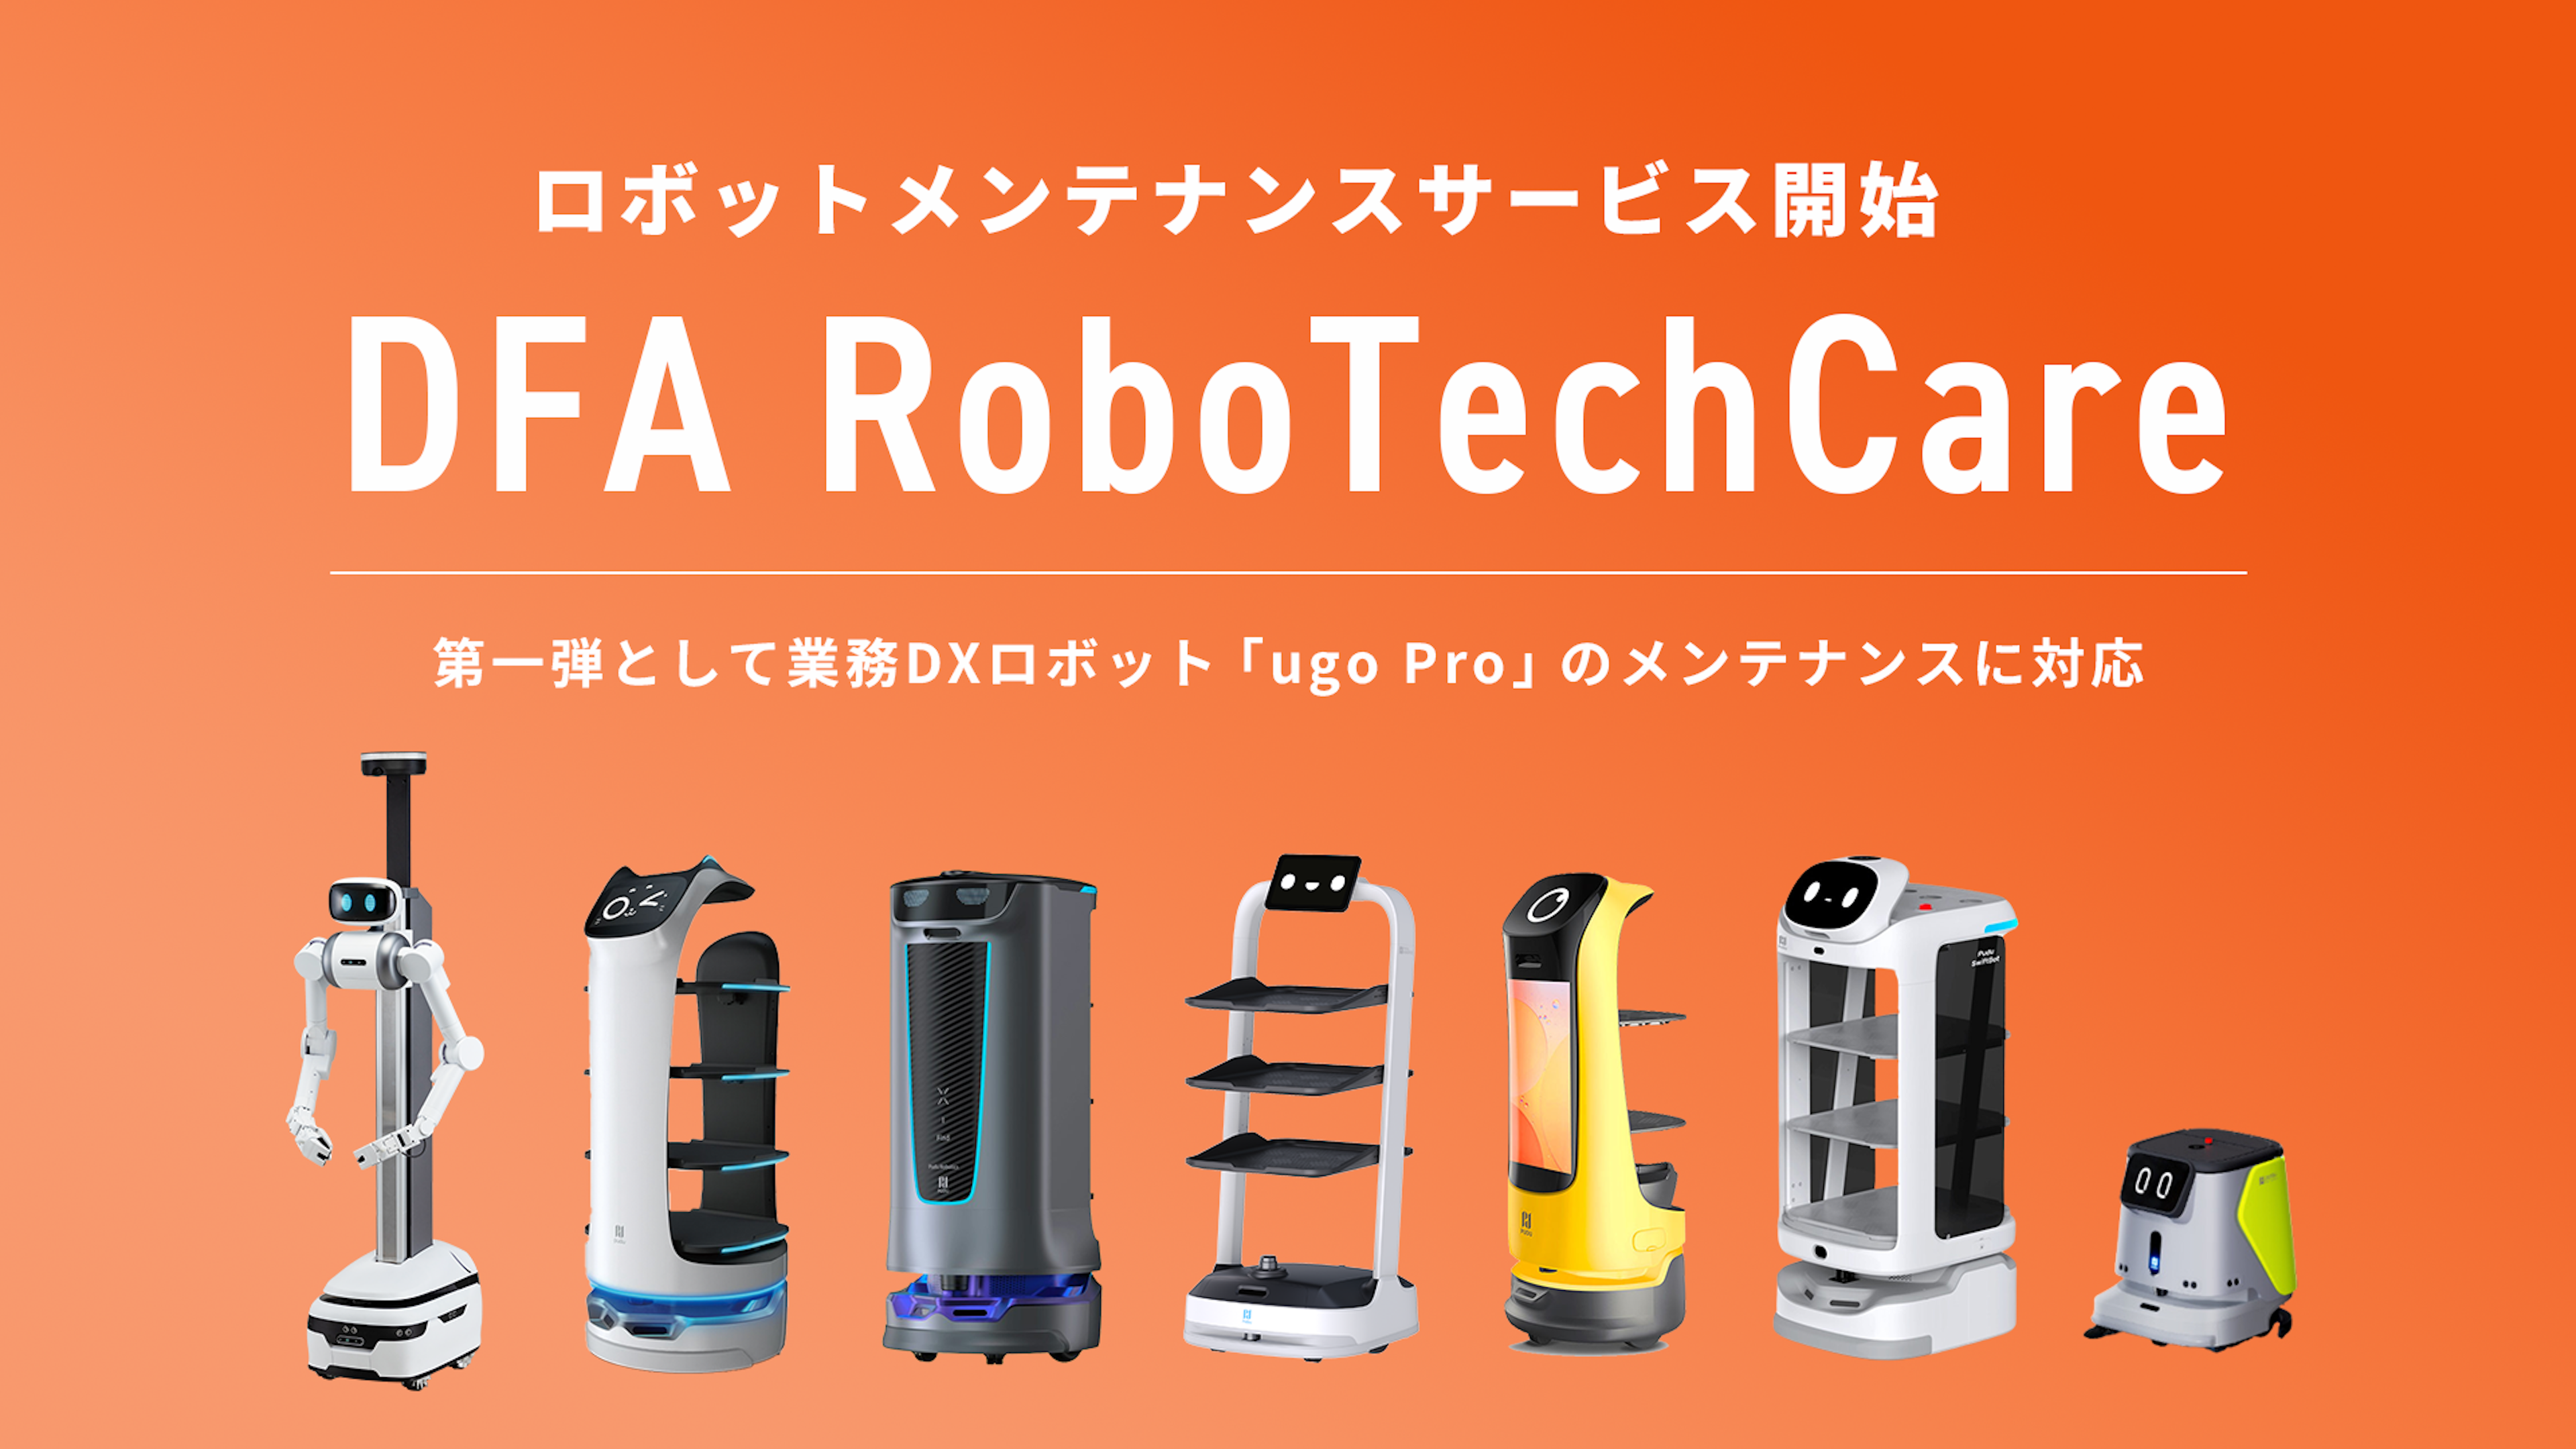 全国をカバーするサービスロボットメンテナンス事業「DFA RoboTechCare」を提供開始
